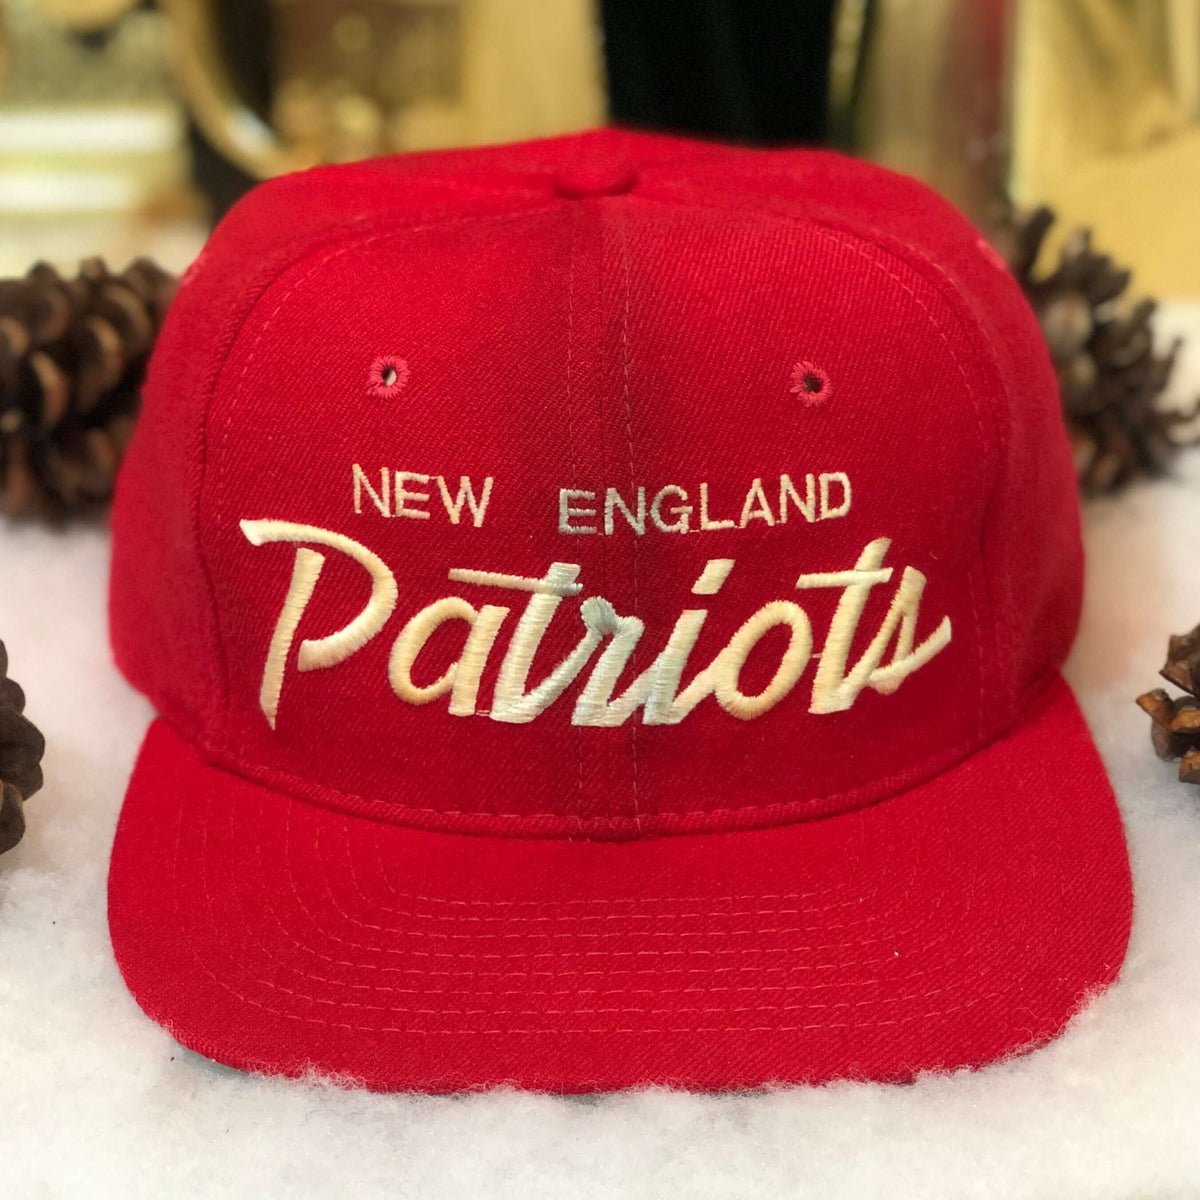 patriots script hat